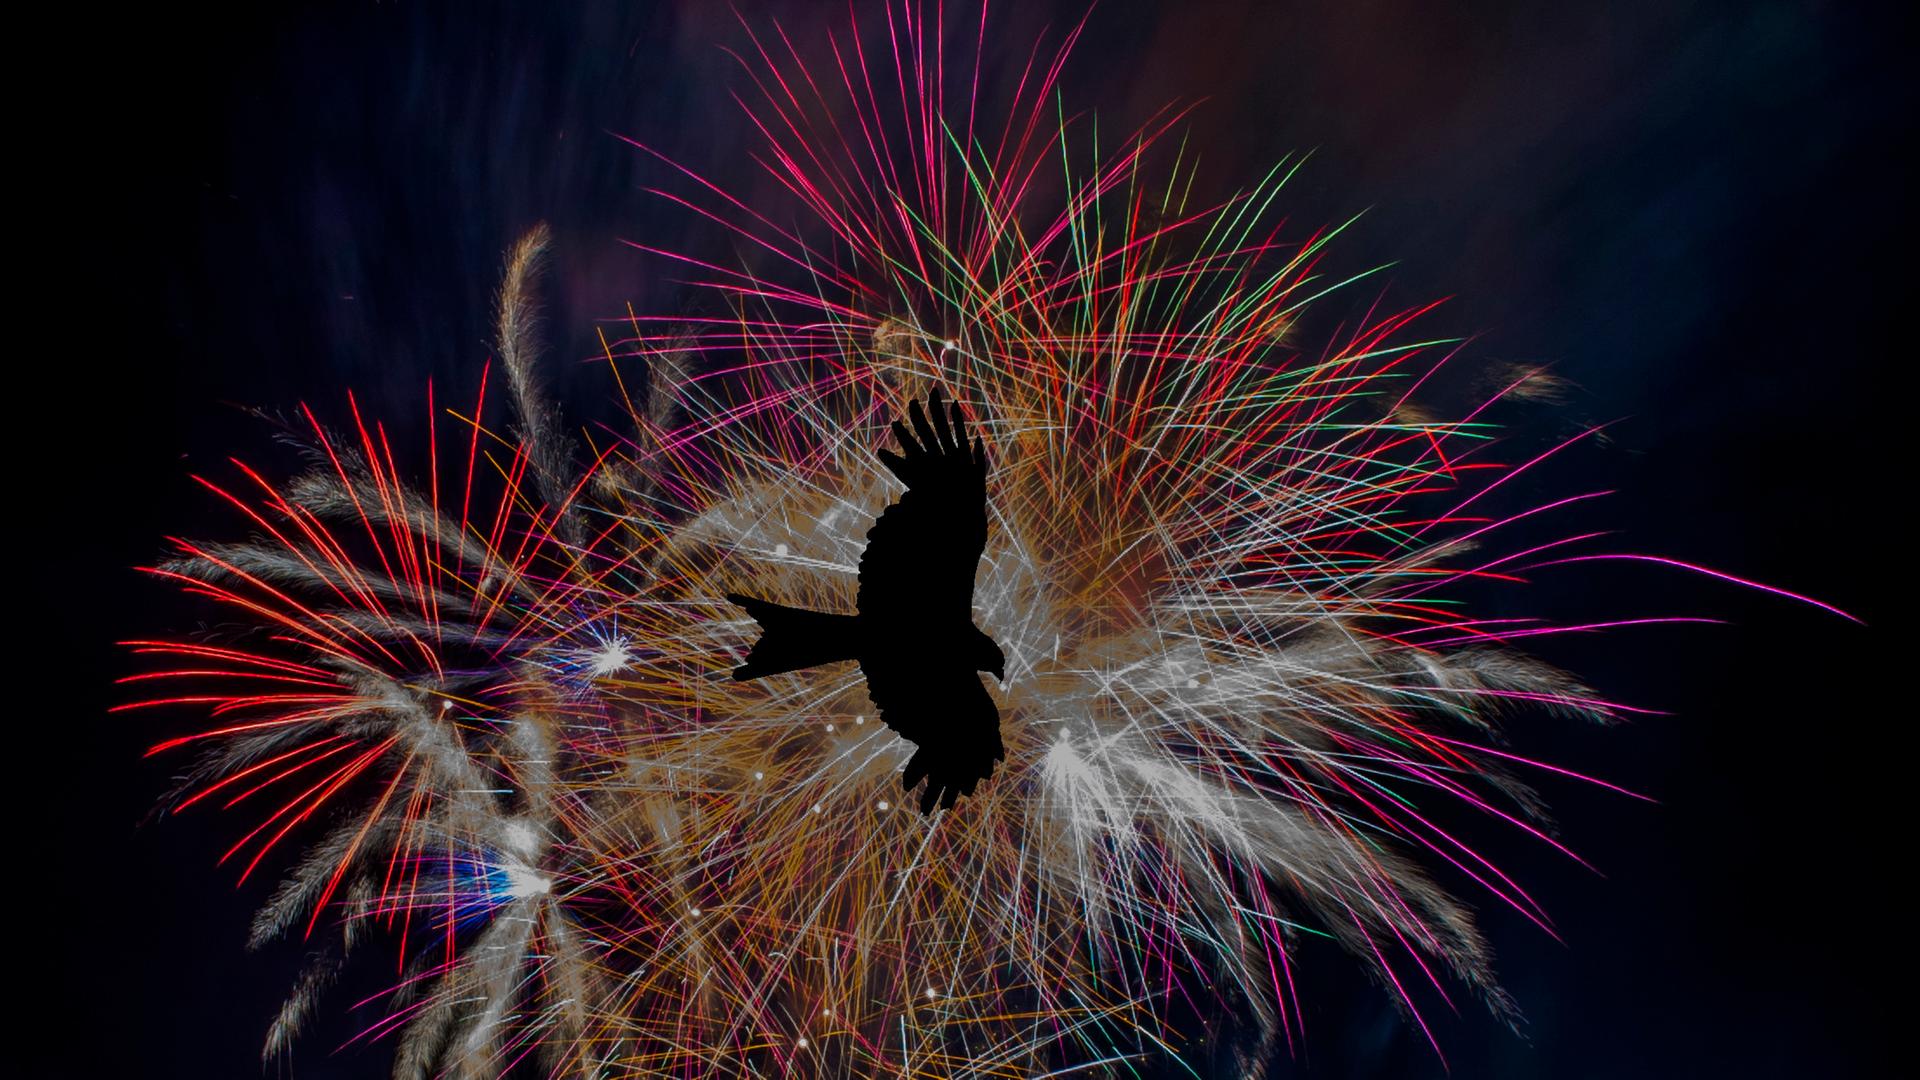 Die schwarze Silhouette eines fliegenden Vogels vor einem farbenfrohen Feuerwerk am Nachthimmel.